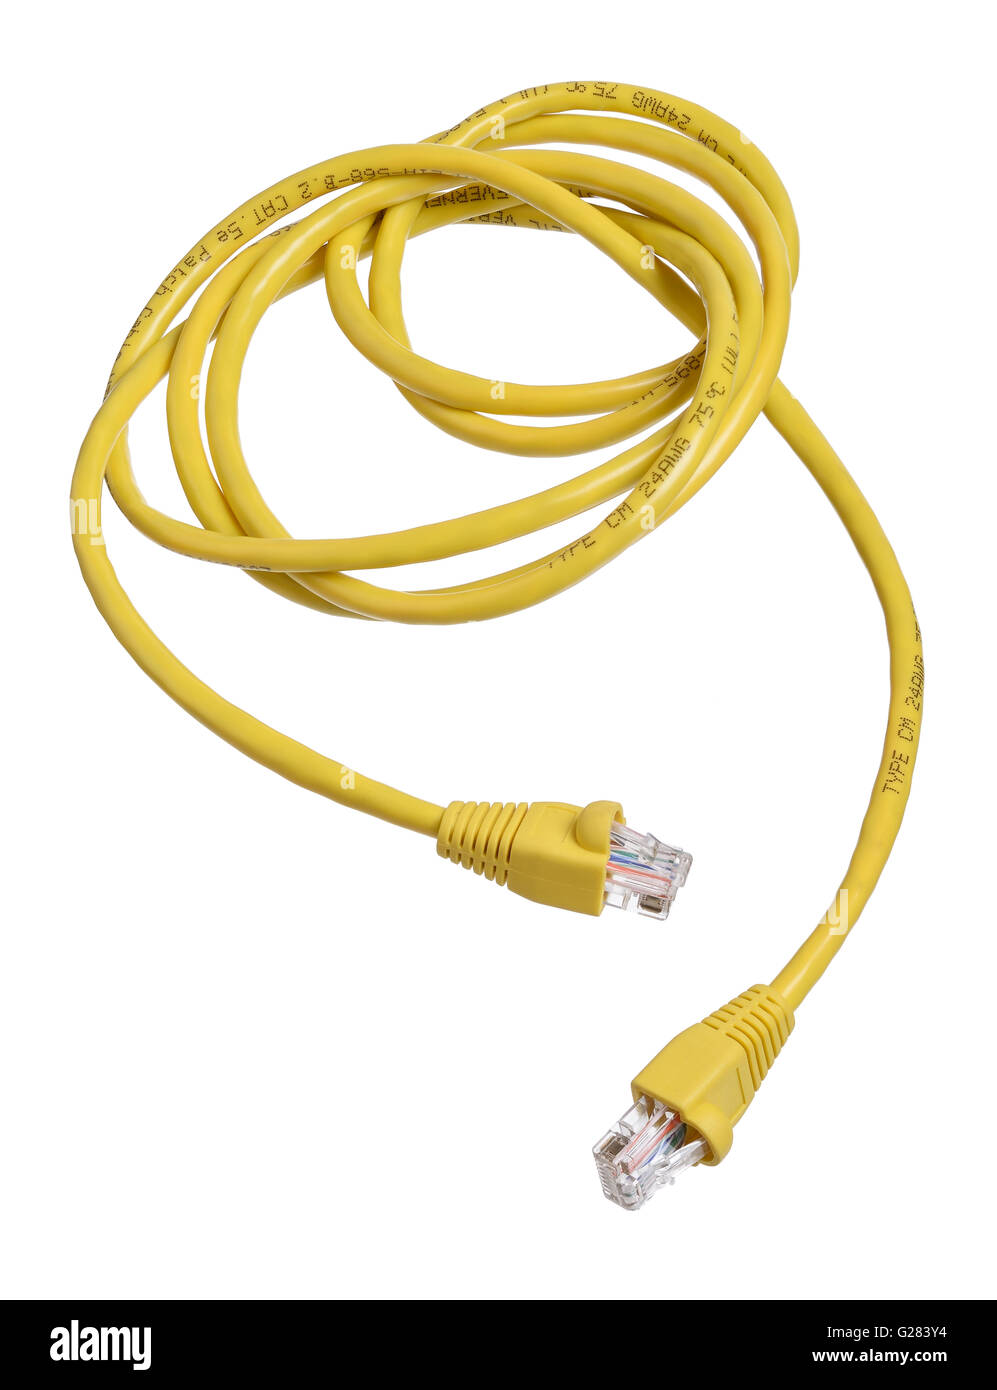 Amarillo y enmarañada enrollado del cable de datos ethernet Foto de stock